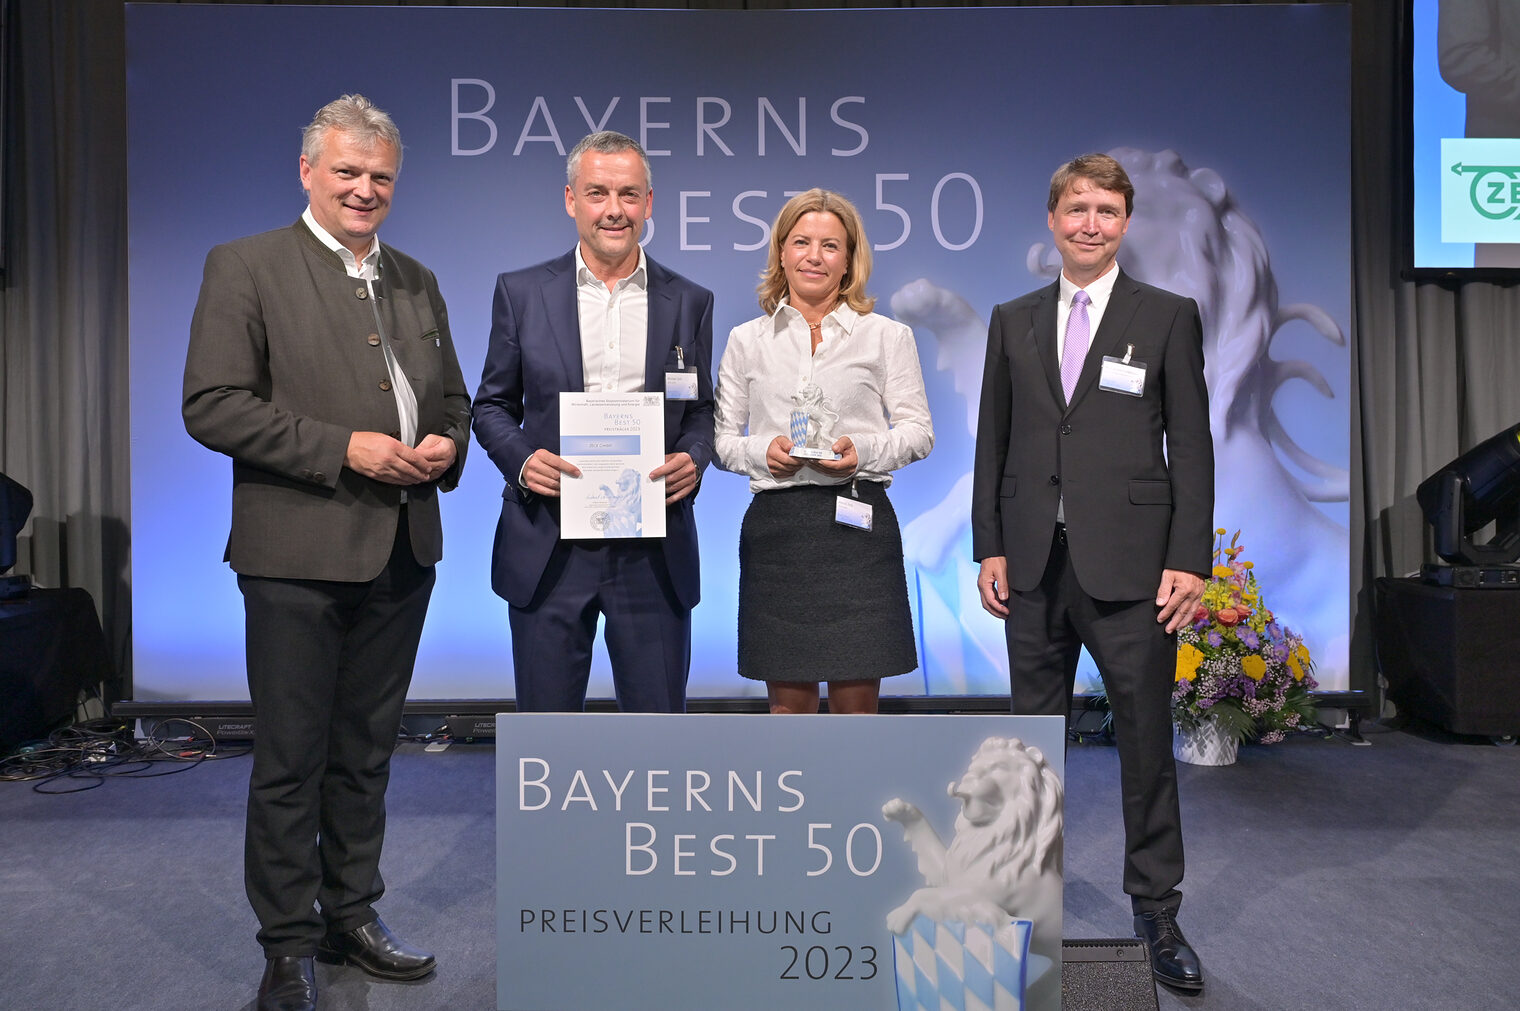 Bayerns Wirtschaftsstaatssekretär Roland Weigert (links) übergibt die Auszeichnung "Bayerns BEST 50" an die Zeck GmbH aus Scheßlitz.